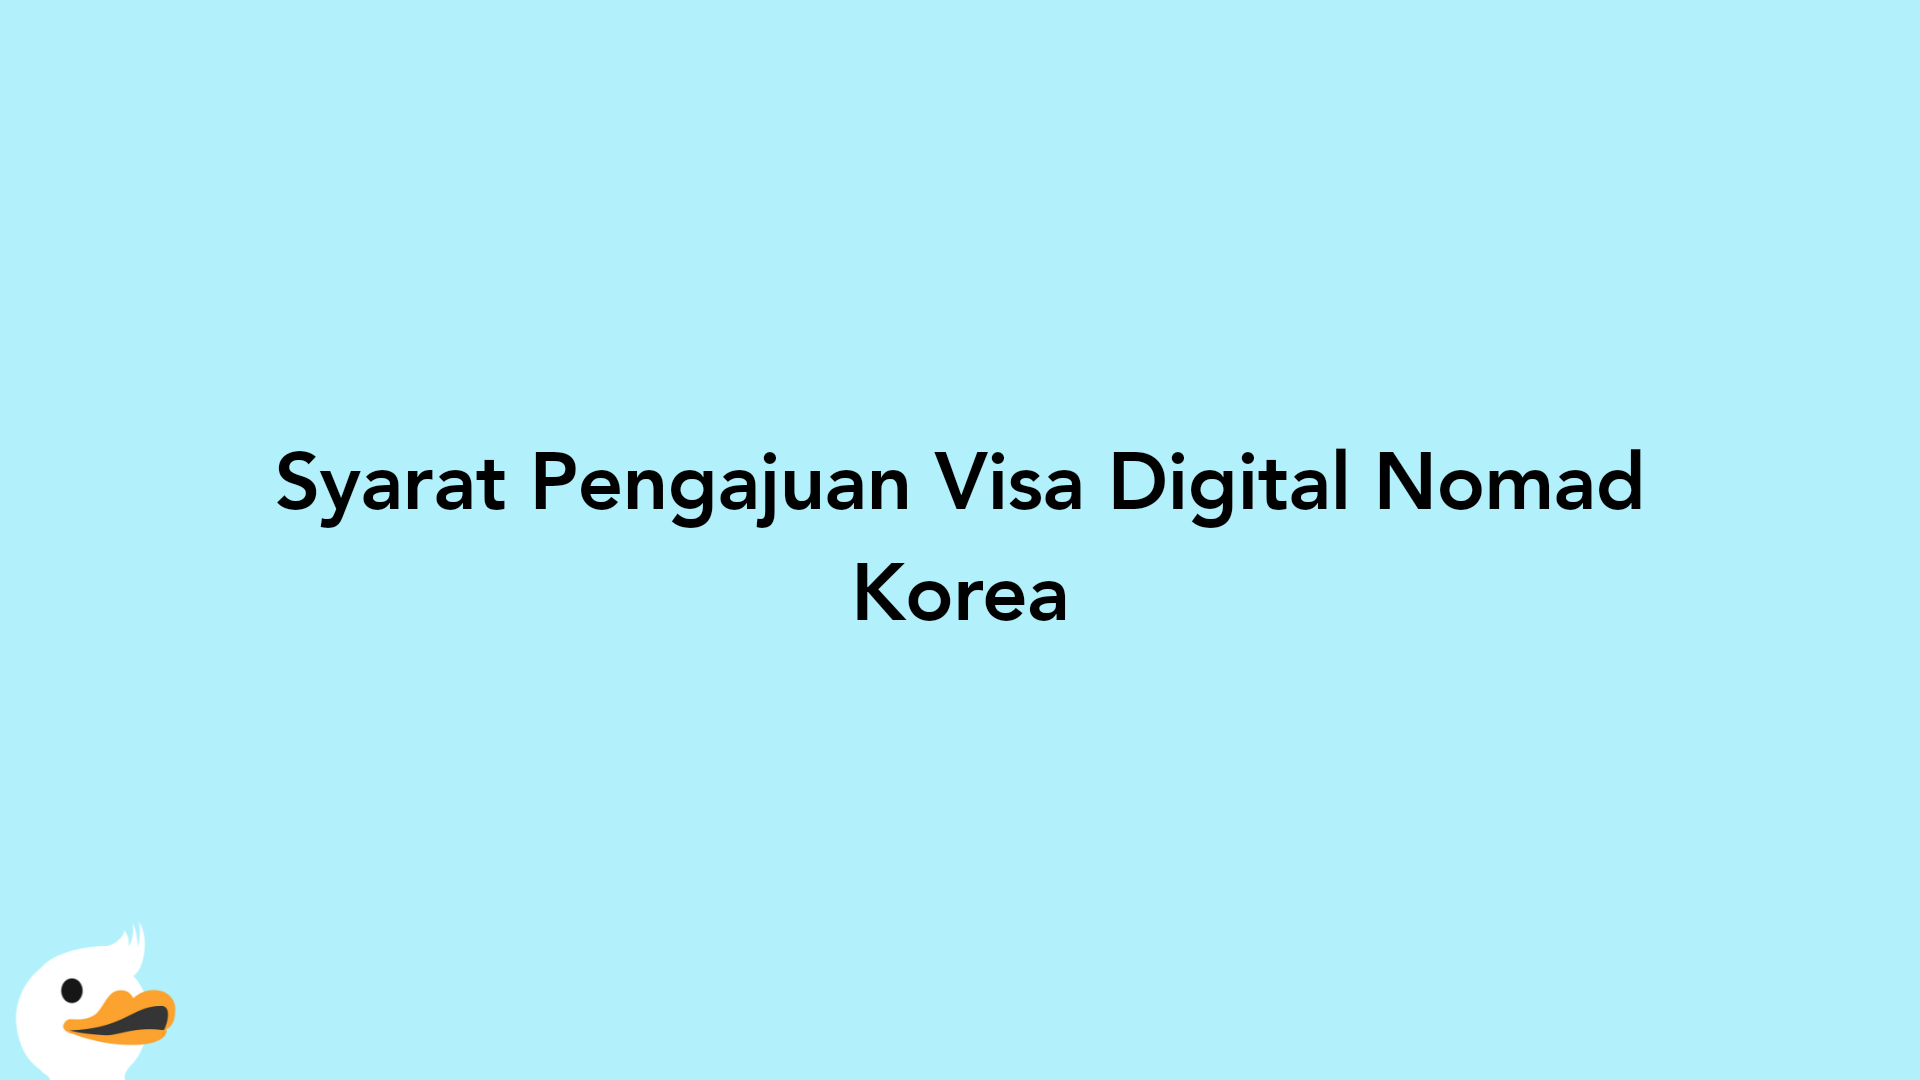 Syarat Pengajuan Visa Digital Nomad Korea